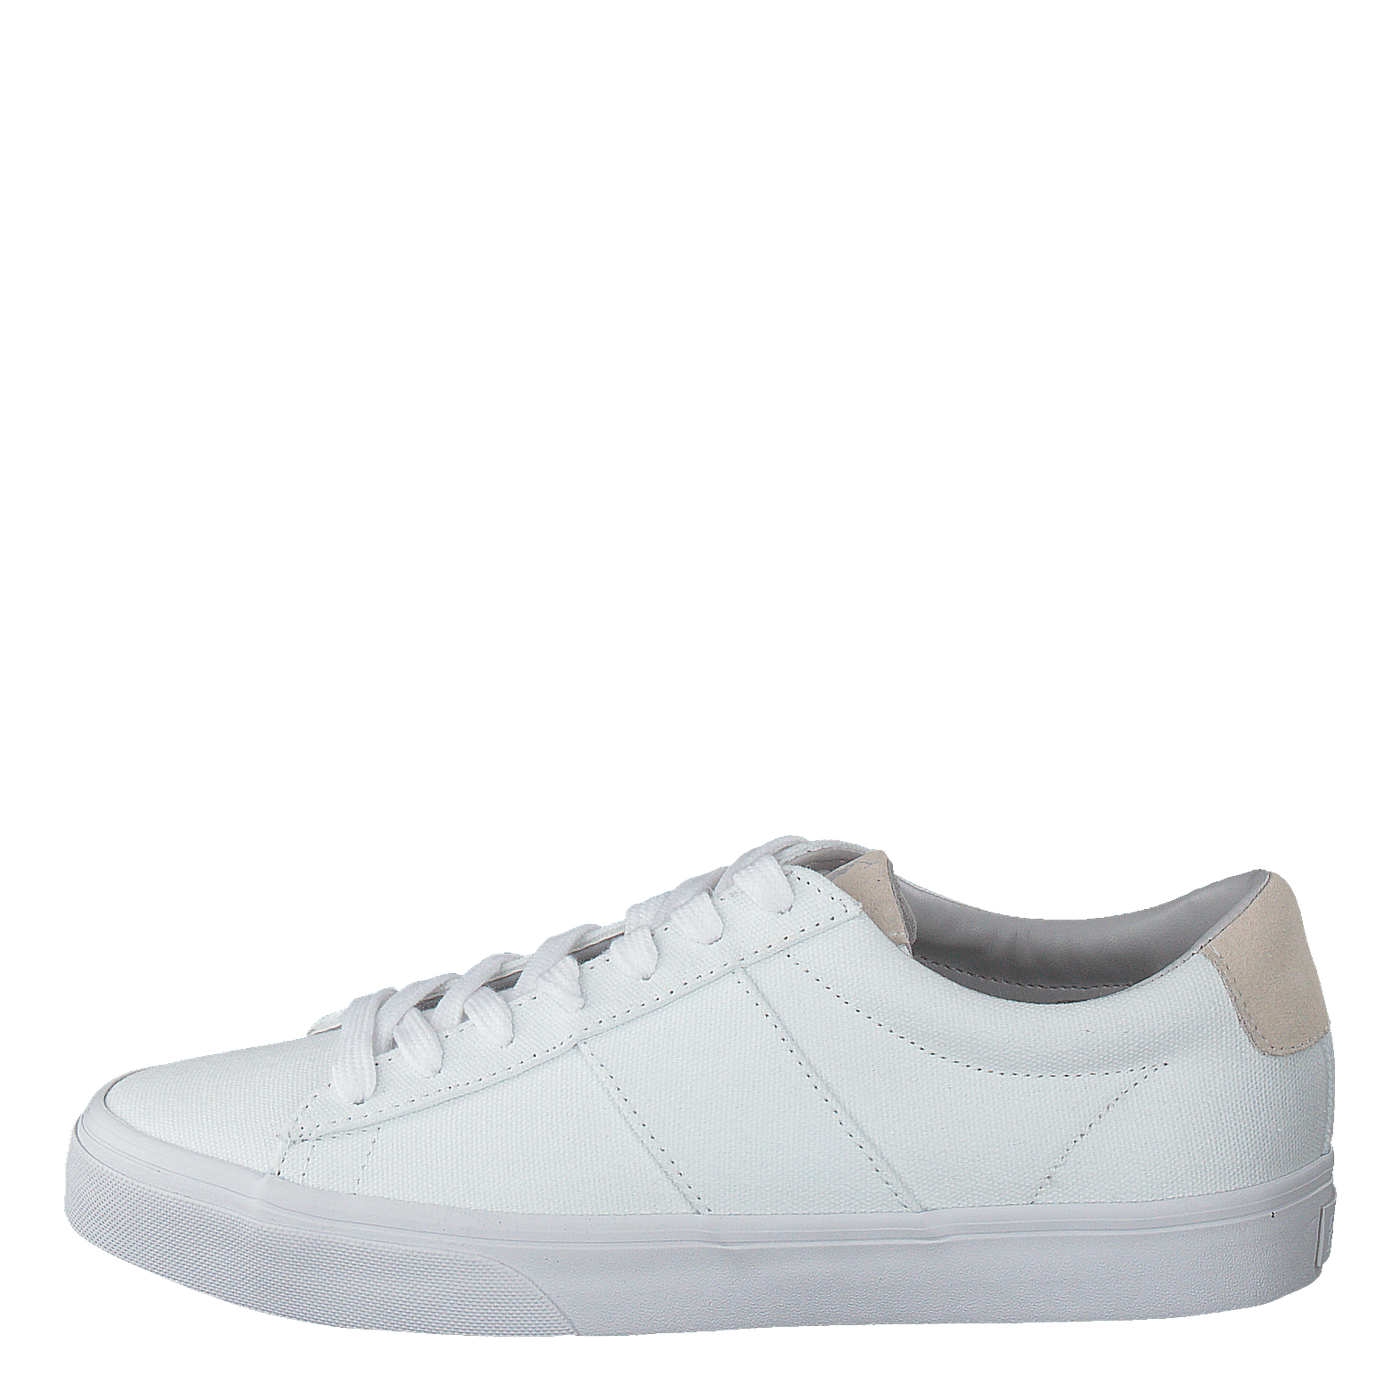 Sayer-sneakers-vulc Bright White